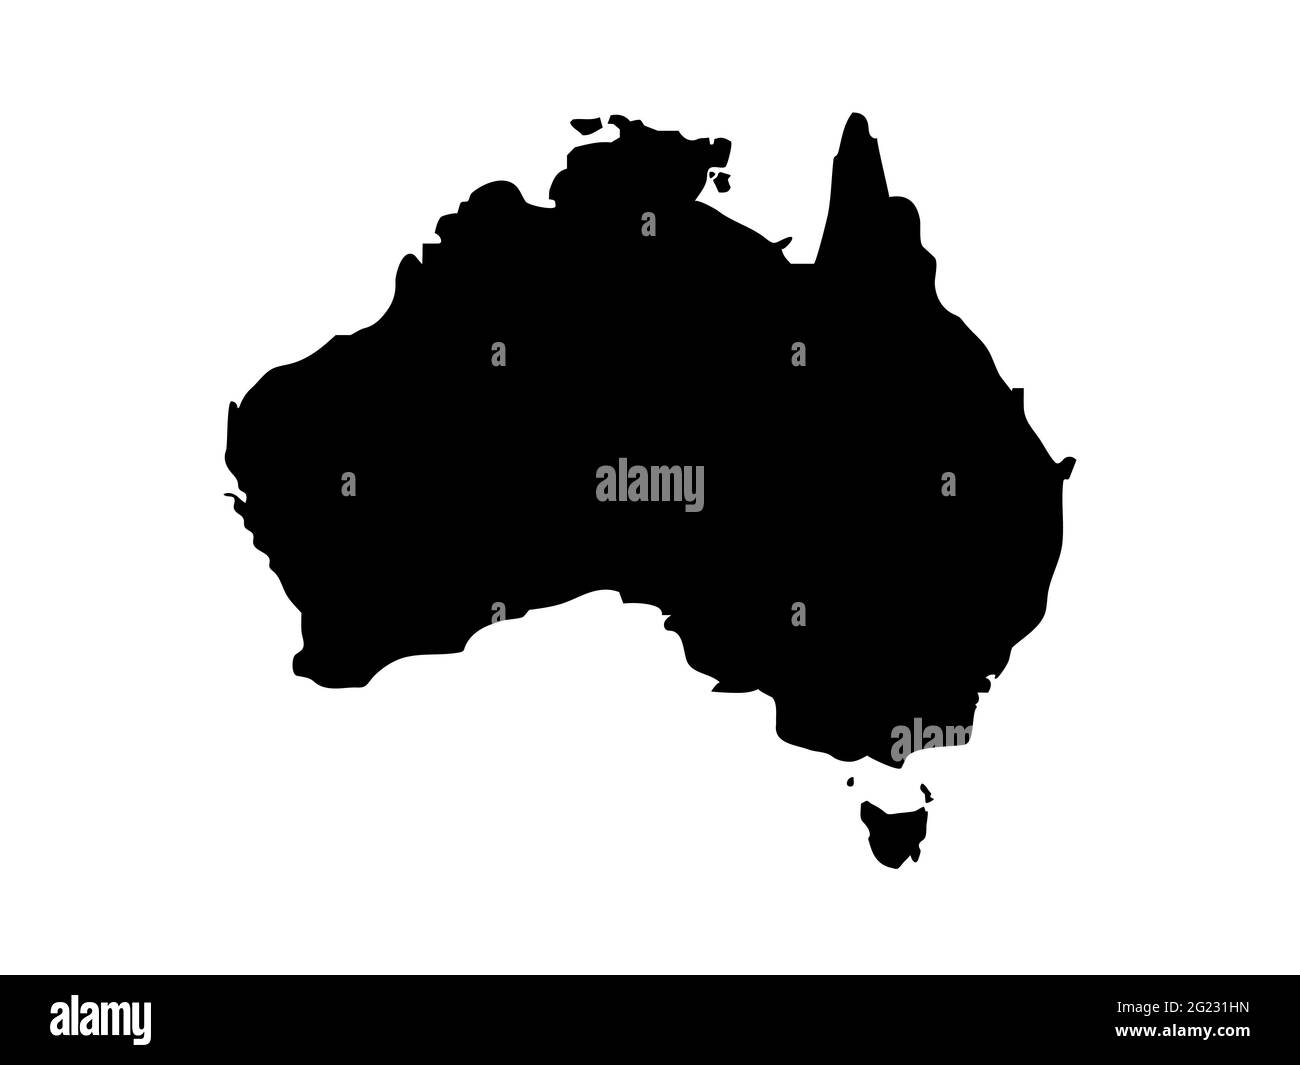 Australien stilisierte Vektorkarte isoliert auf weißem Hintergrund. Schwarze flache Kartenvorlage. Vereinfachte Weltkarte. Generalisiertes Bild des Kontinents Austral Stock Vektor